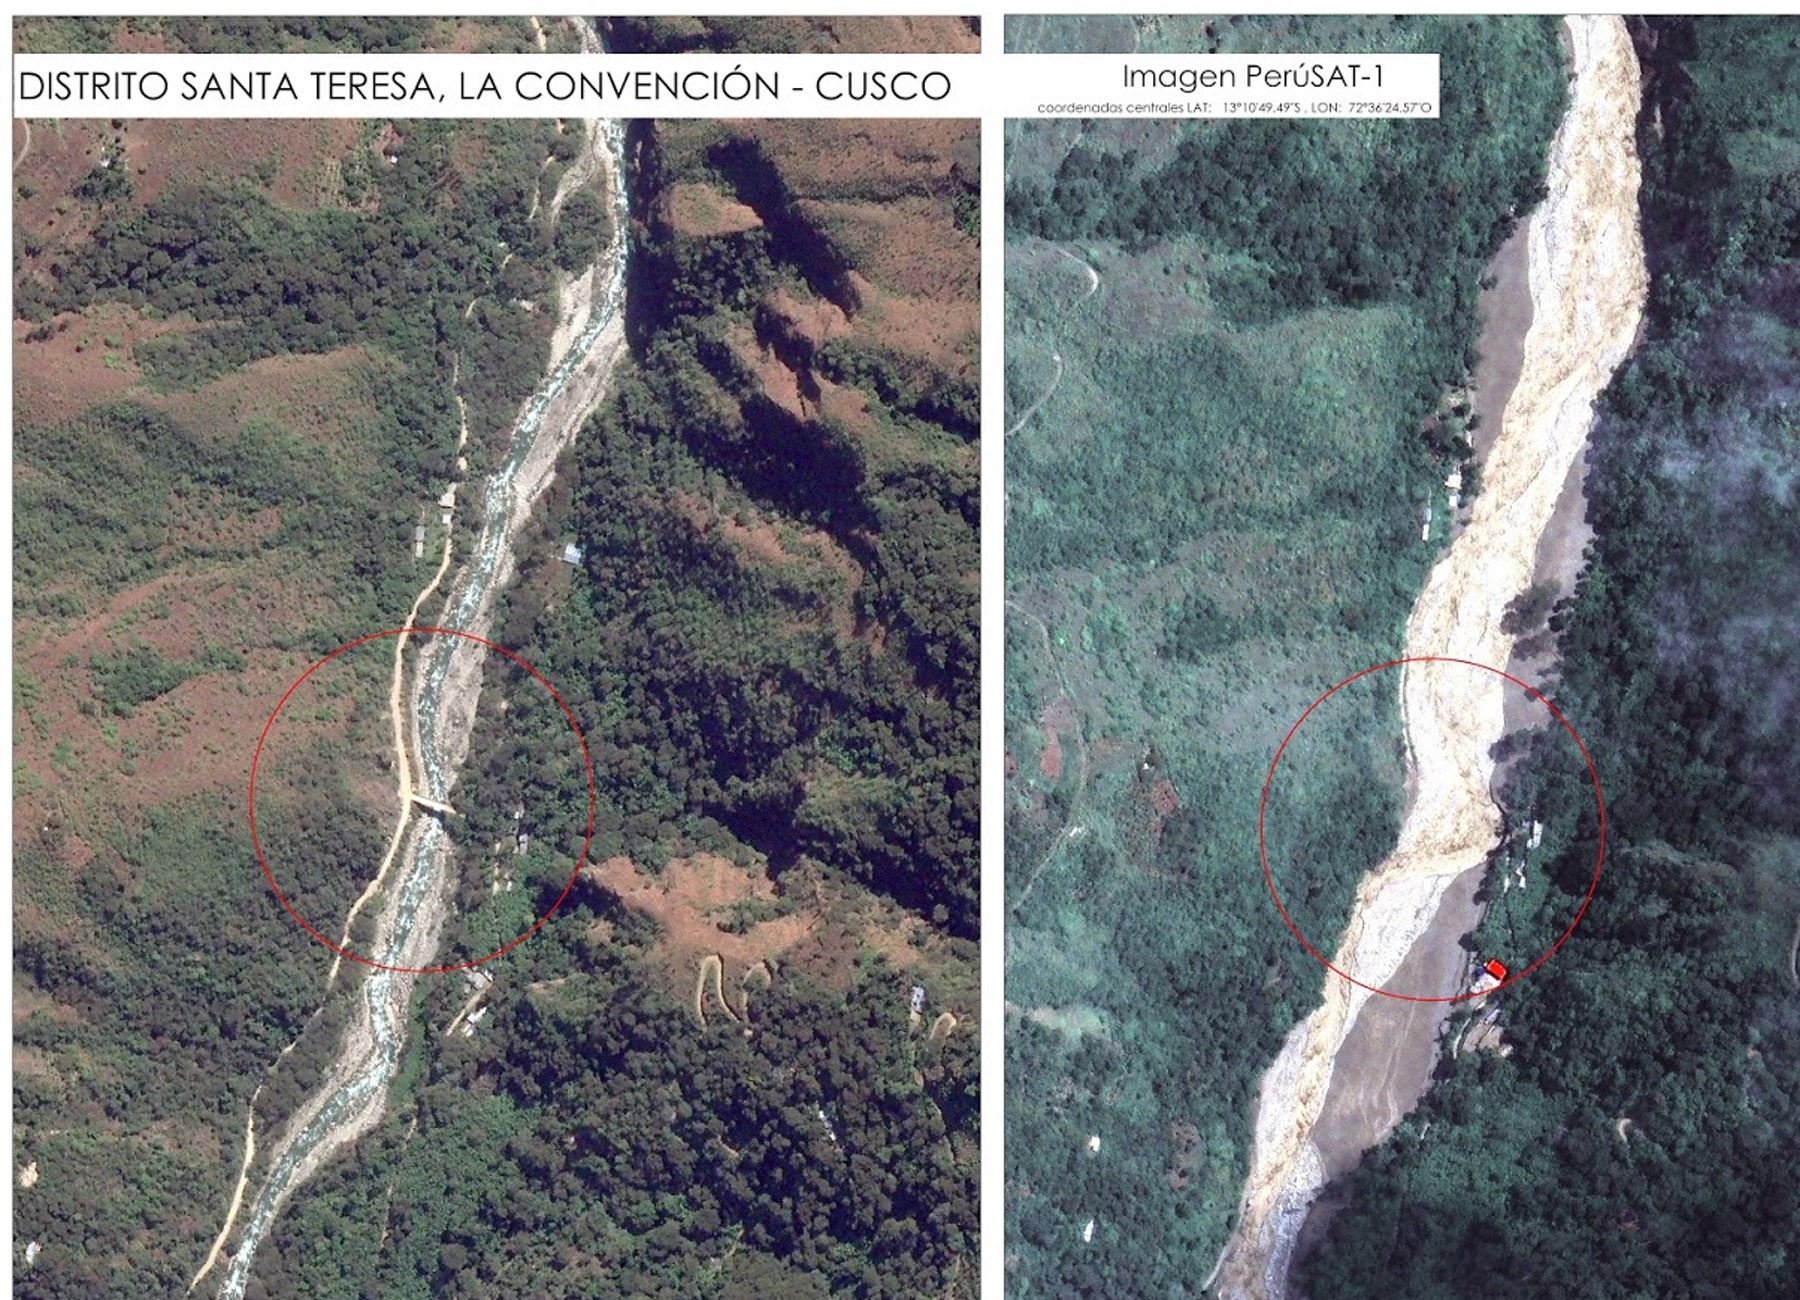 La Agencia Espacial del Perú envió imágenes del satélite PerúSAT-1 que fueron captadas en la zona afectada del distrito de Santa Teresa en Cusco